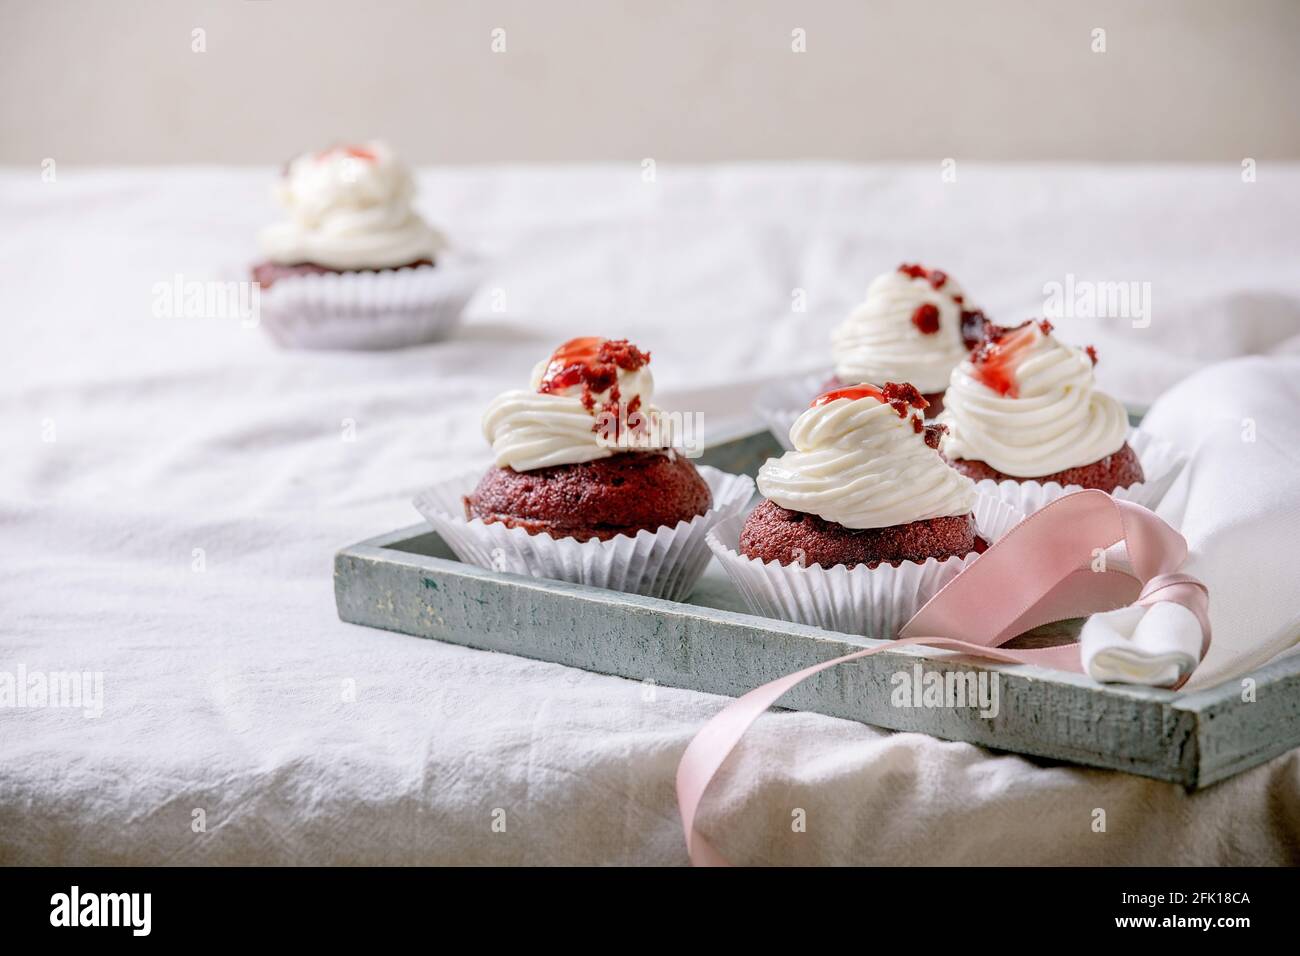 Petits gâteaux faits maison en velours rouge avec crème fouettée sur plateau en bois, serviette blanche avec ruban sur nappe blanche. Banque D'Images